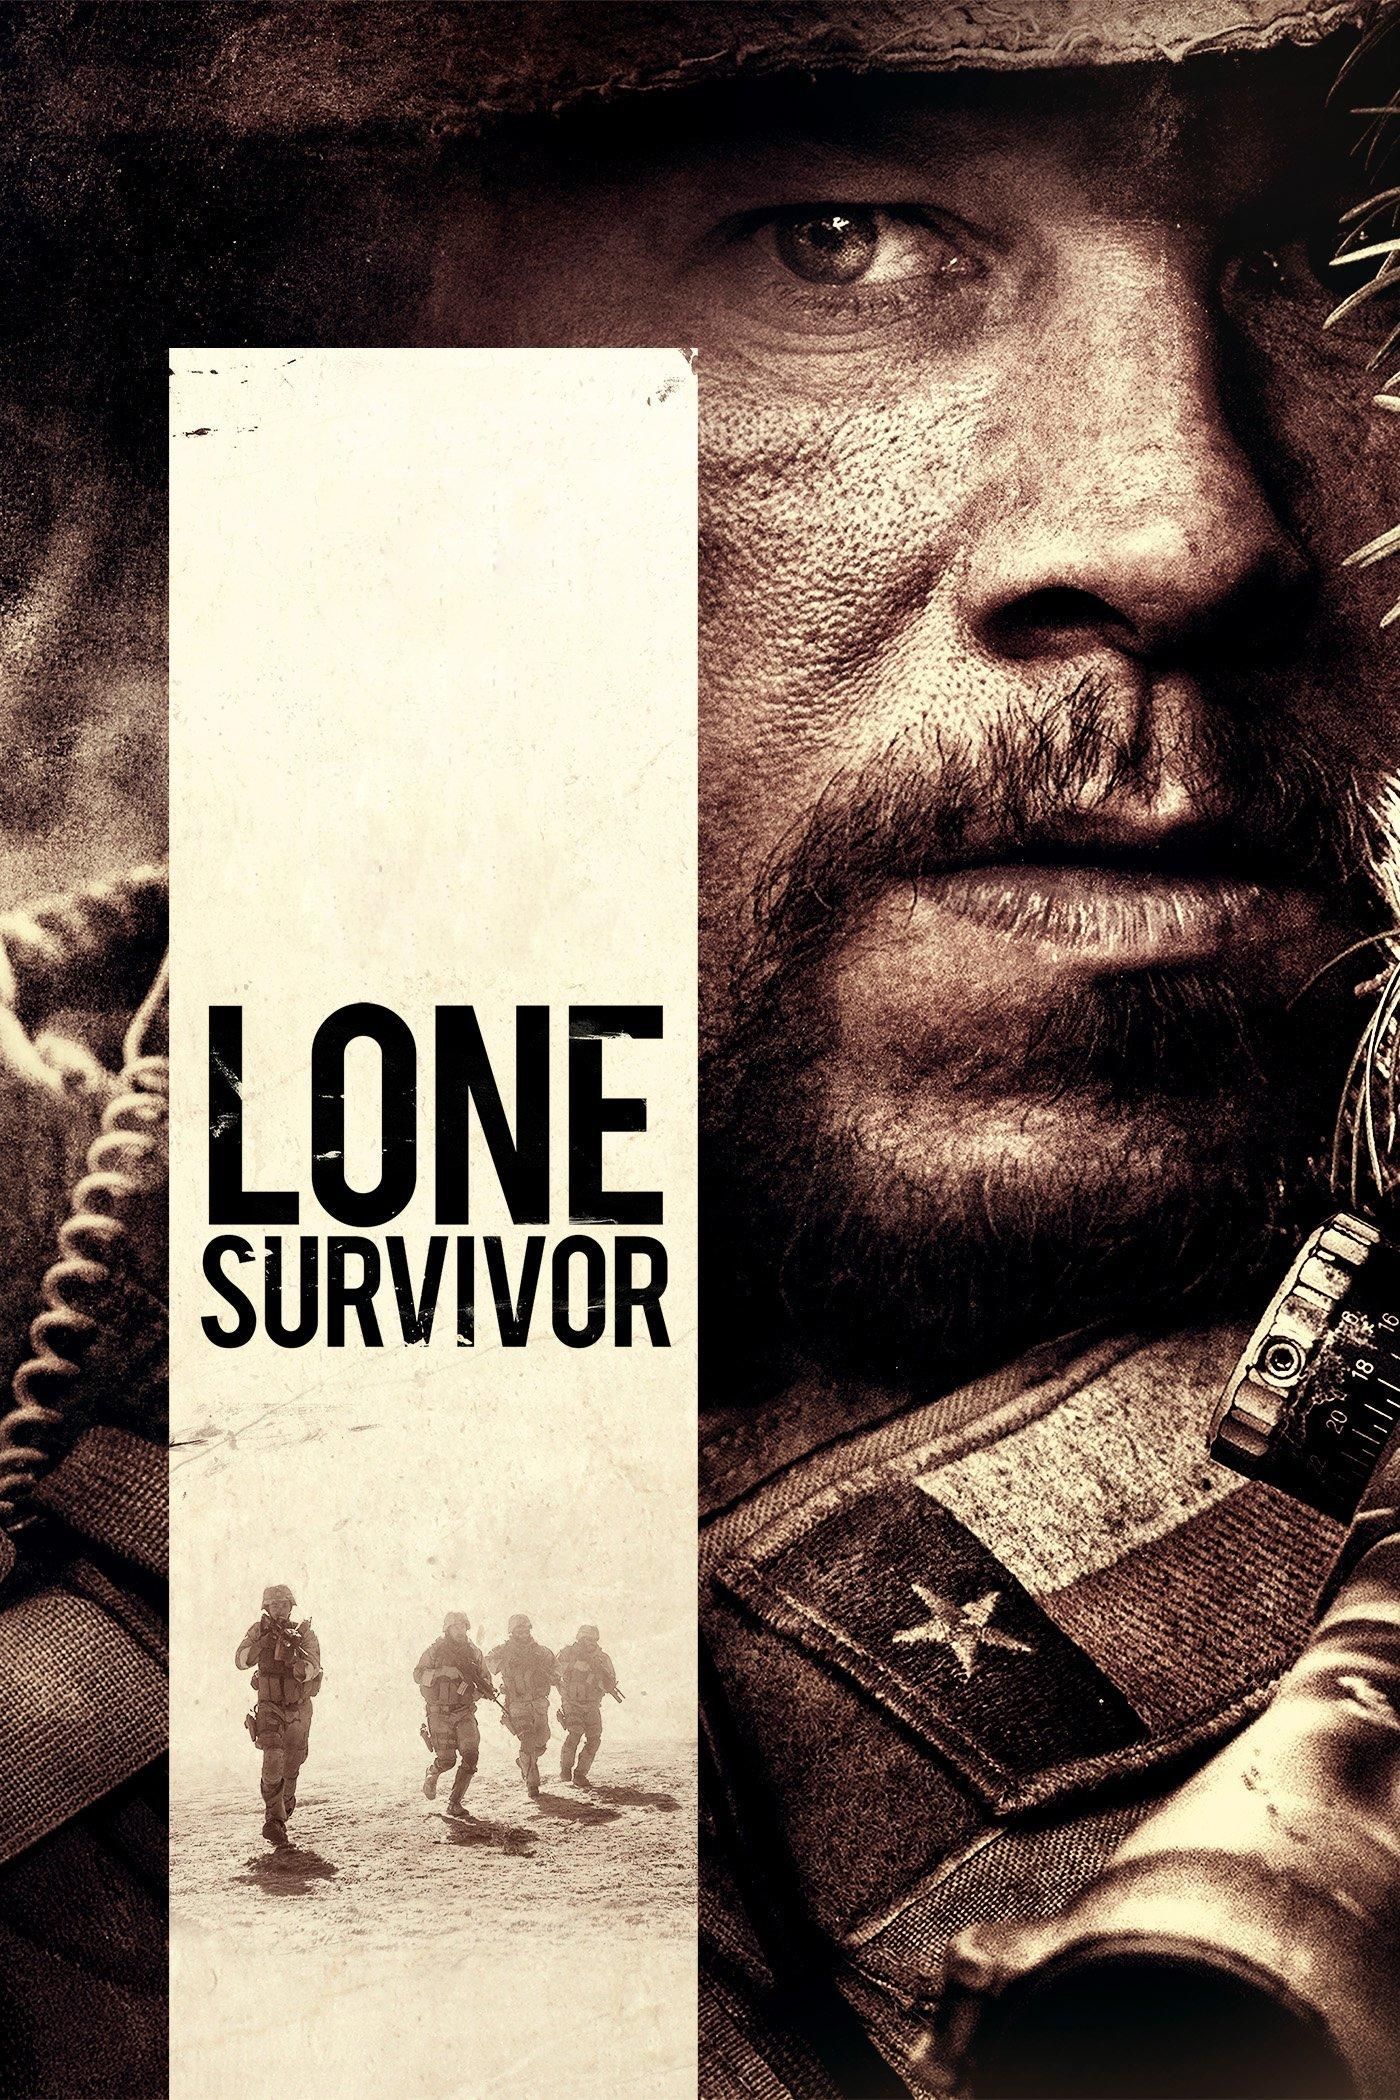 Stream Lone Survivor (2013) FullMovie Free Online On 123Movies